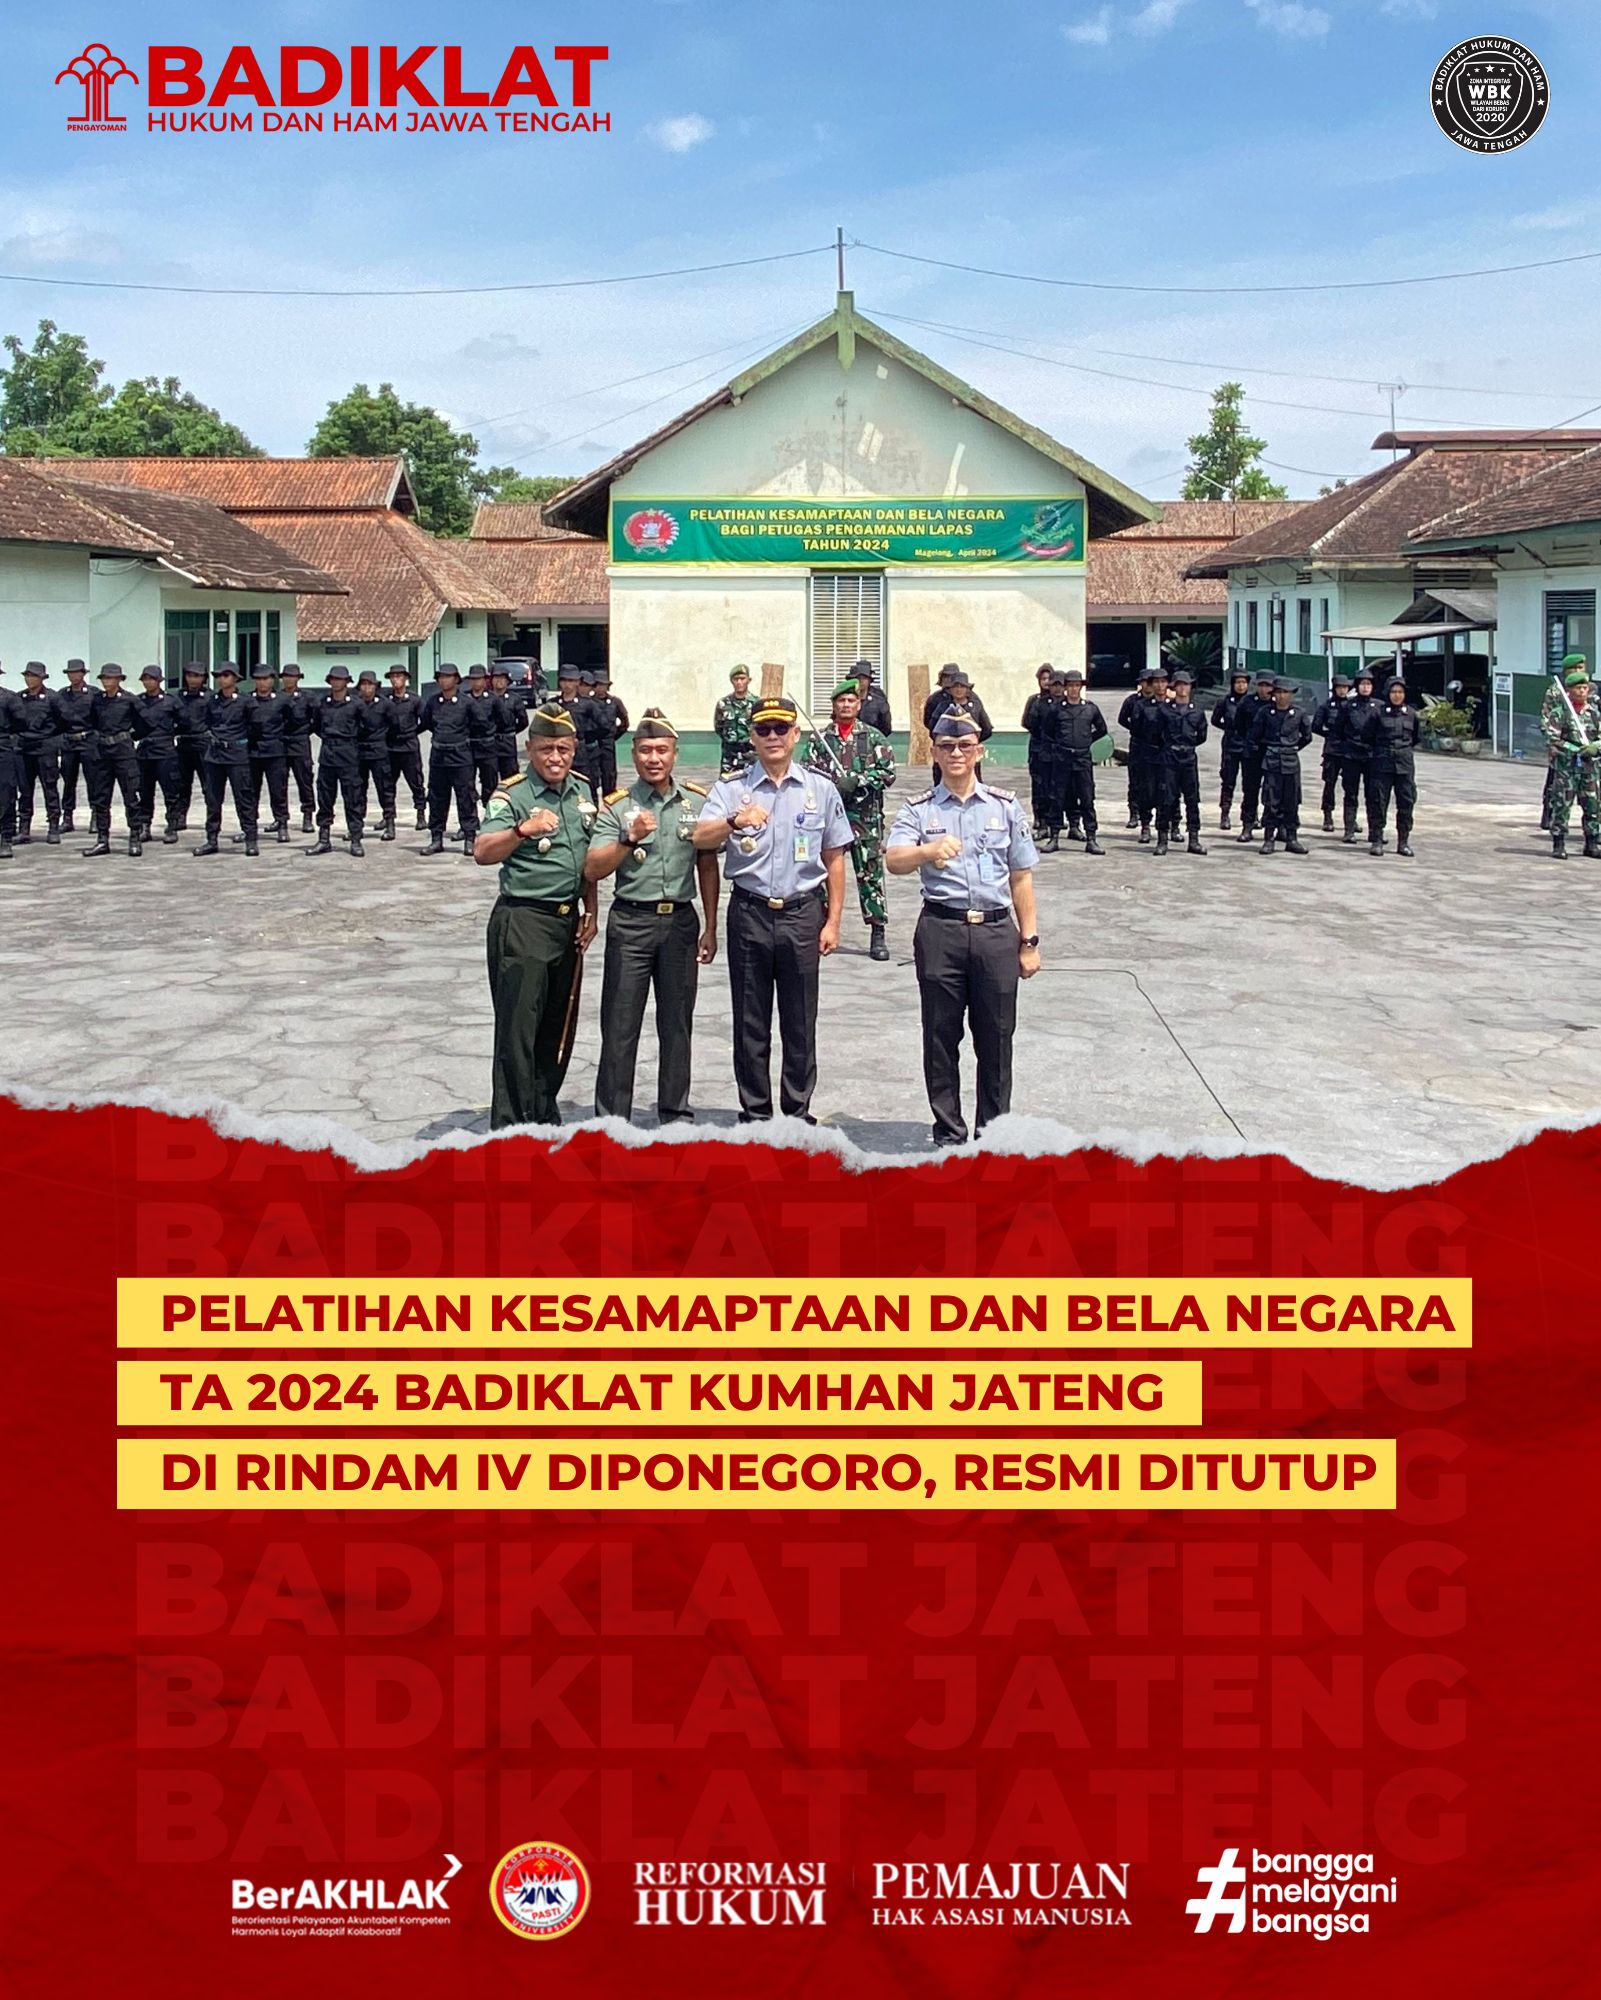 Pelatihan Kesamaptaan dan Bela Negara TA 2024 Badiklat Kumhan Jateng di Rindam IV Diponegoro, Resmi Ditutup